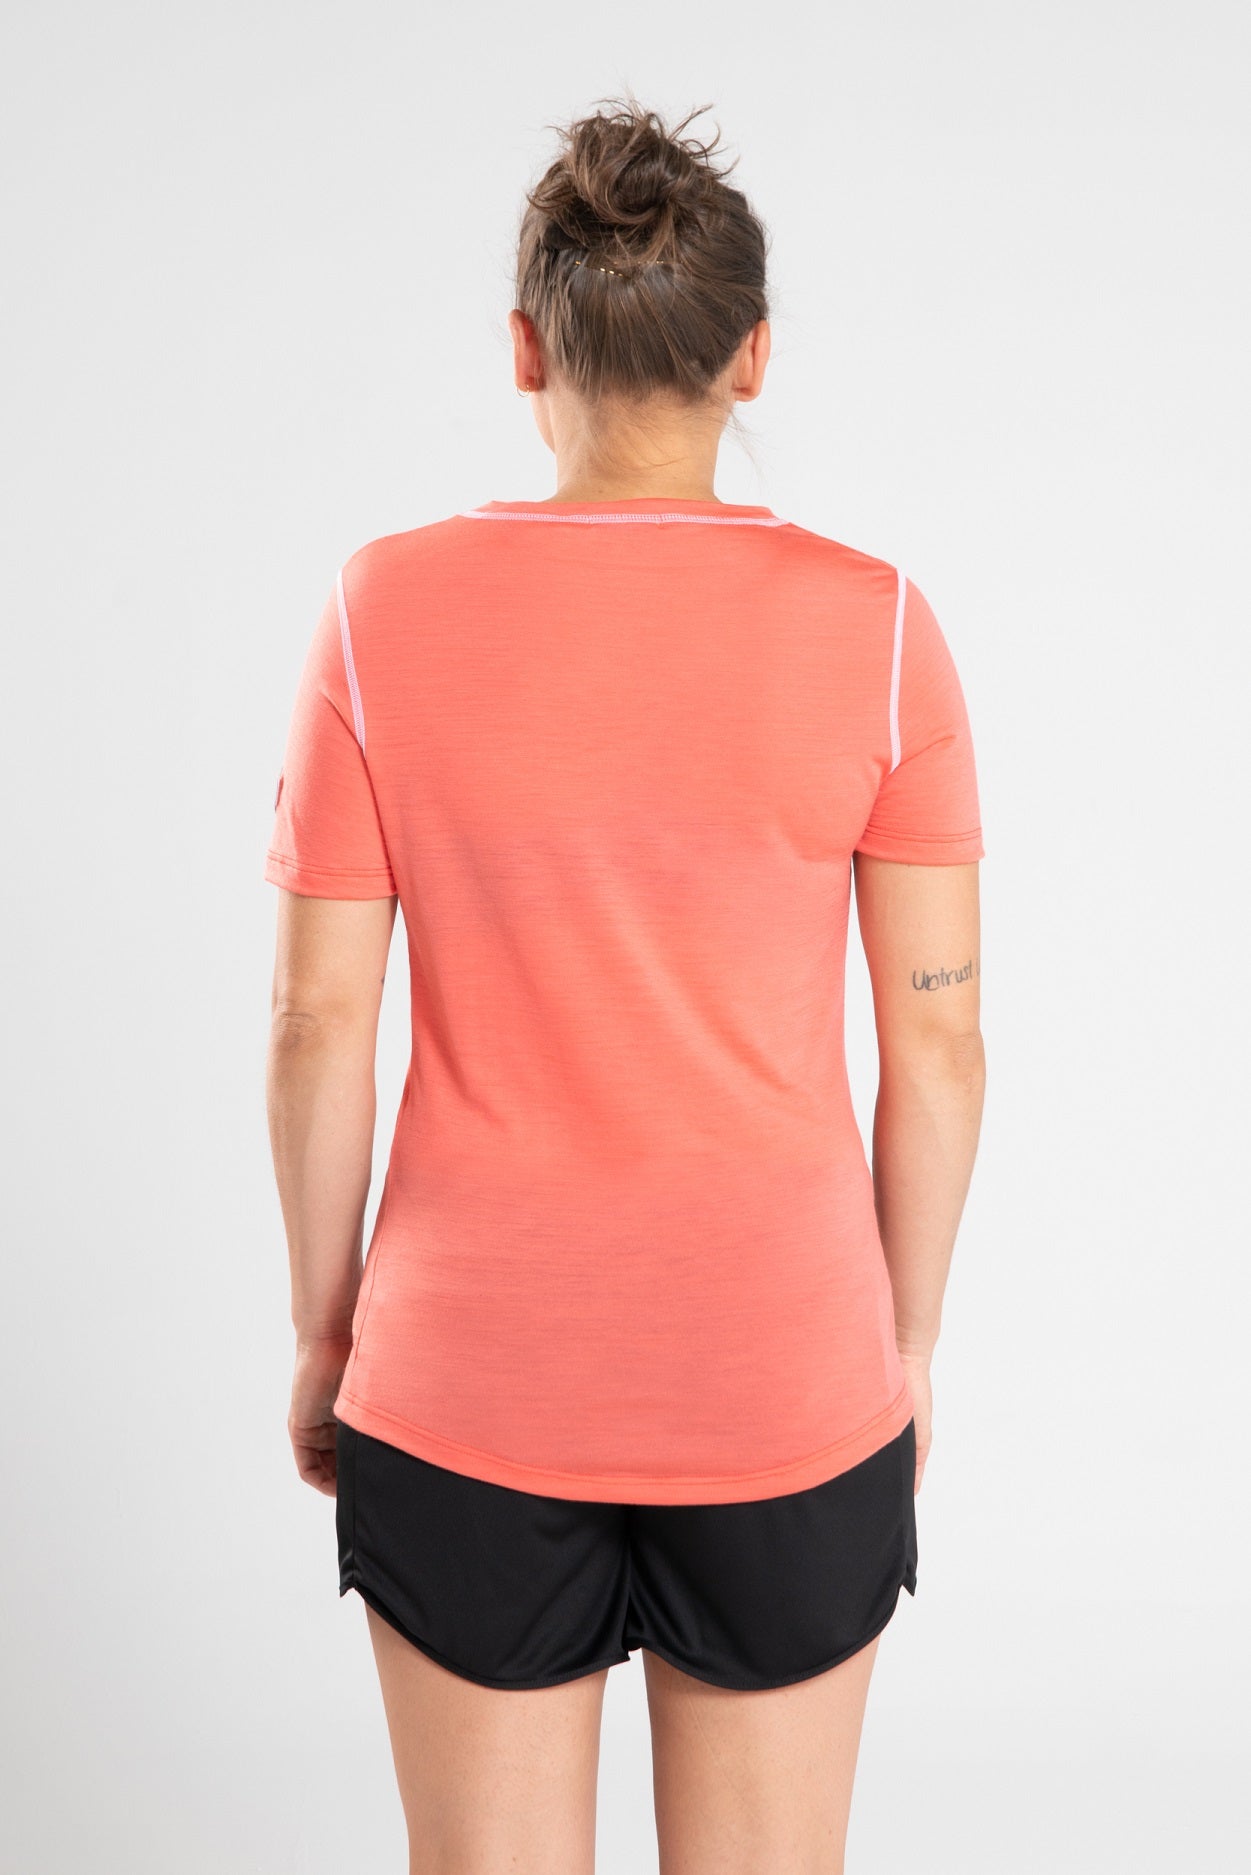 T-Shirt Running Femme Corail en mérinos et lyocell 